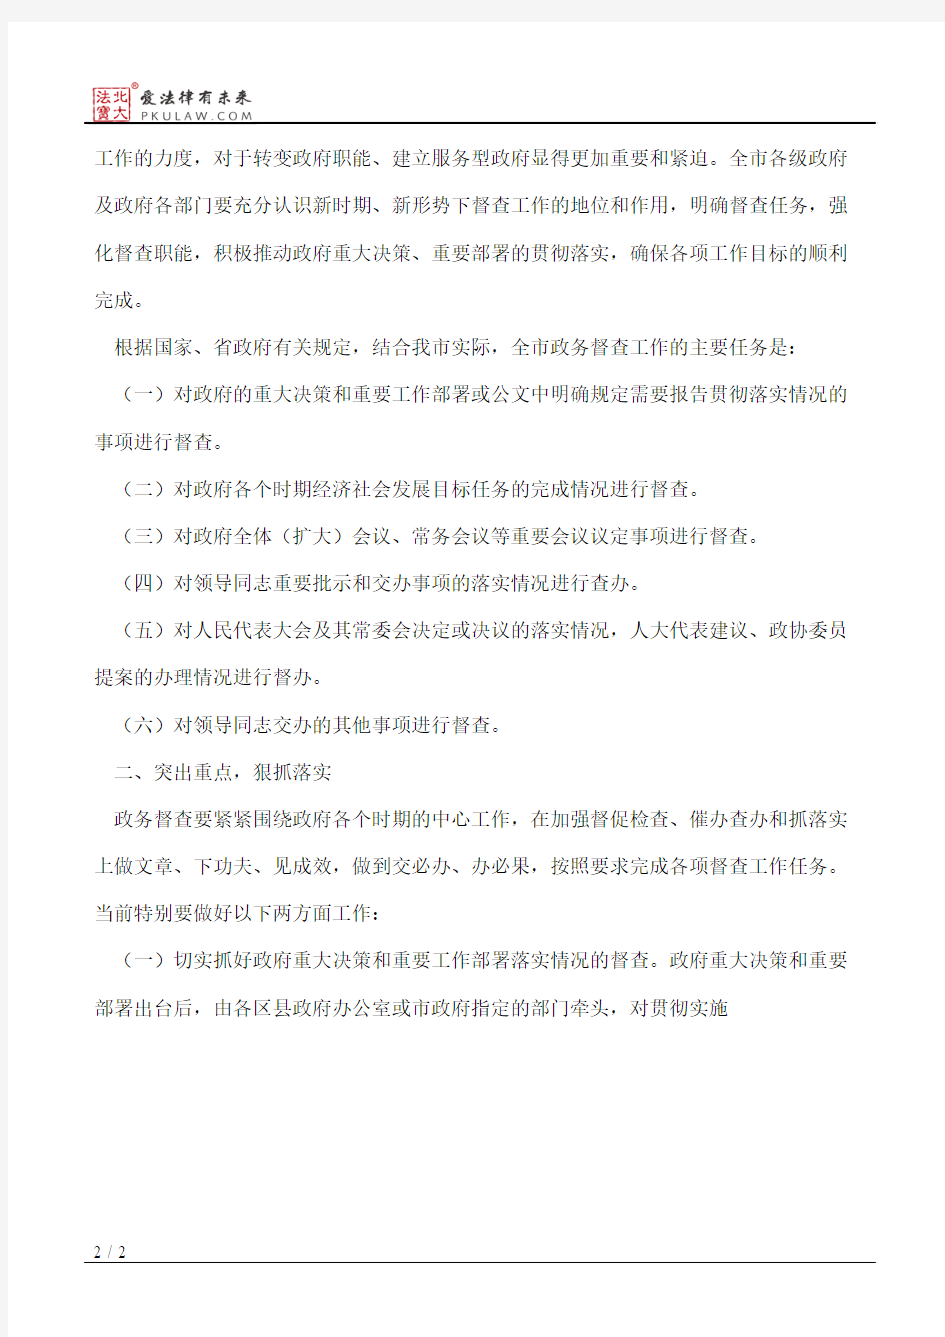 南京市政府办公厅关于进一步加强政务督查工作的通知